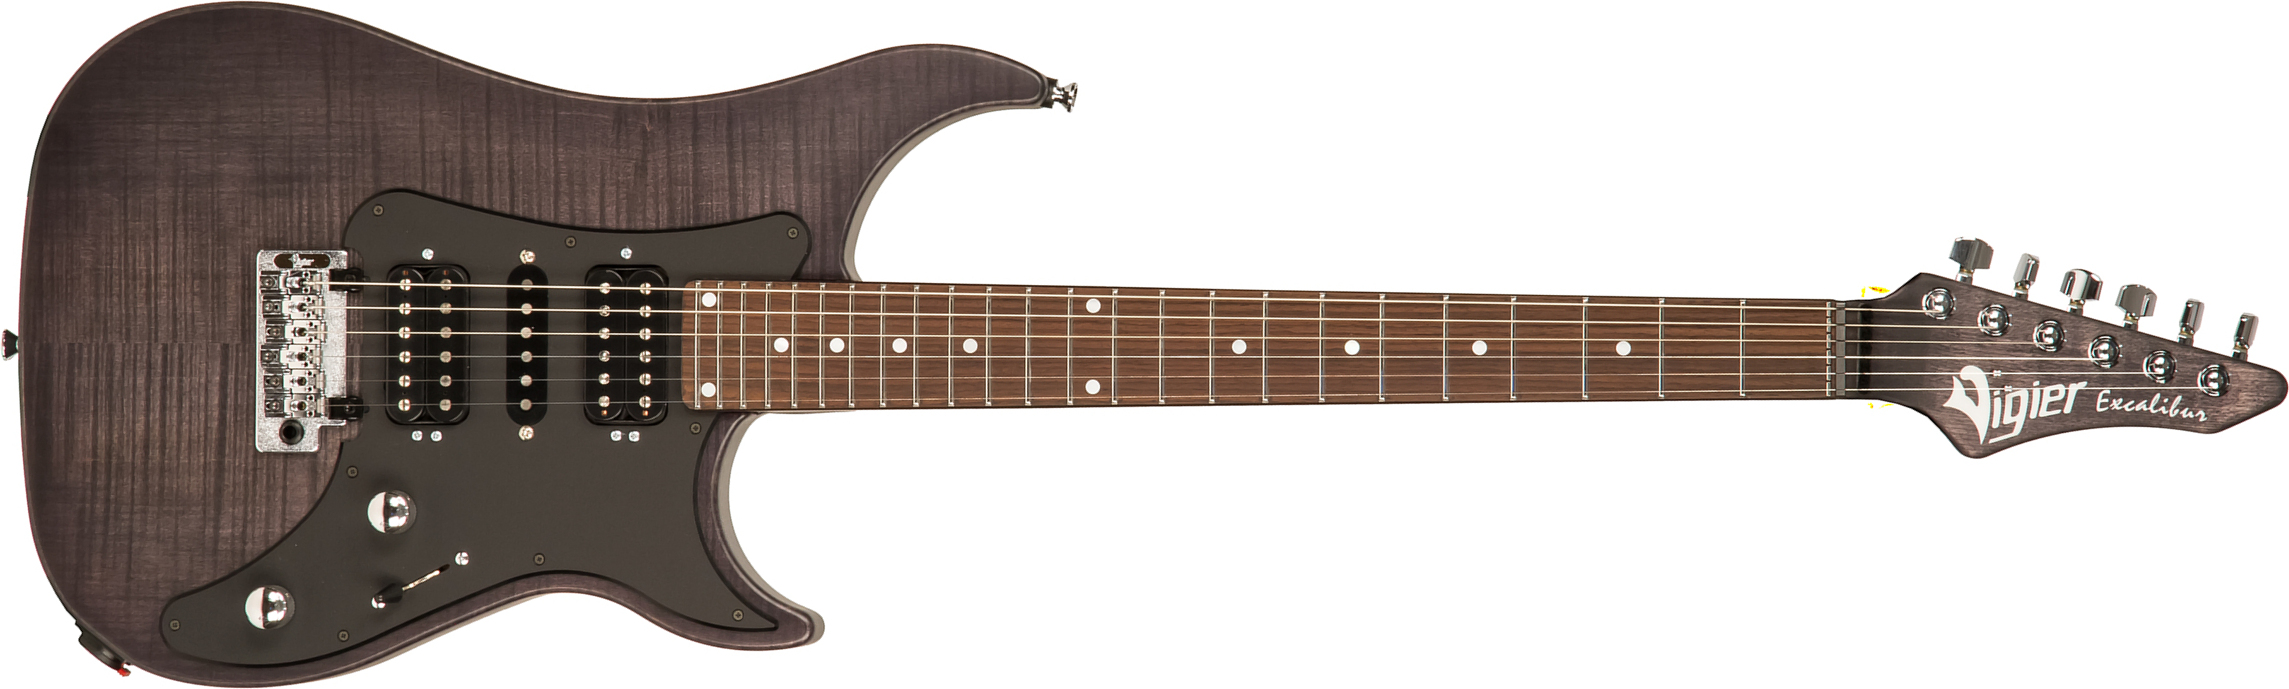 Vigier Excalibur Speciaal Hsh Trem Rw - Velour Noir - Metalen elektrische gitaar - Main picture